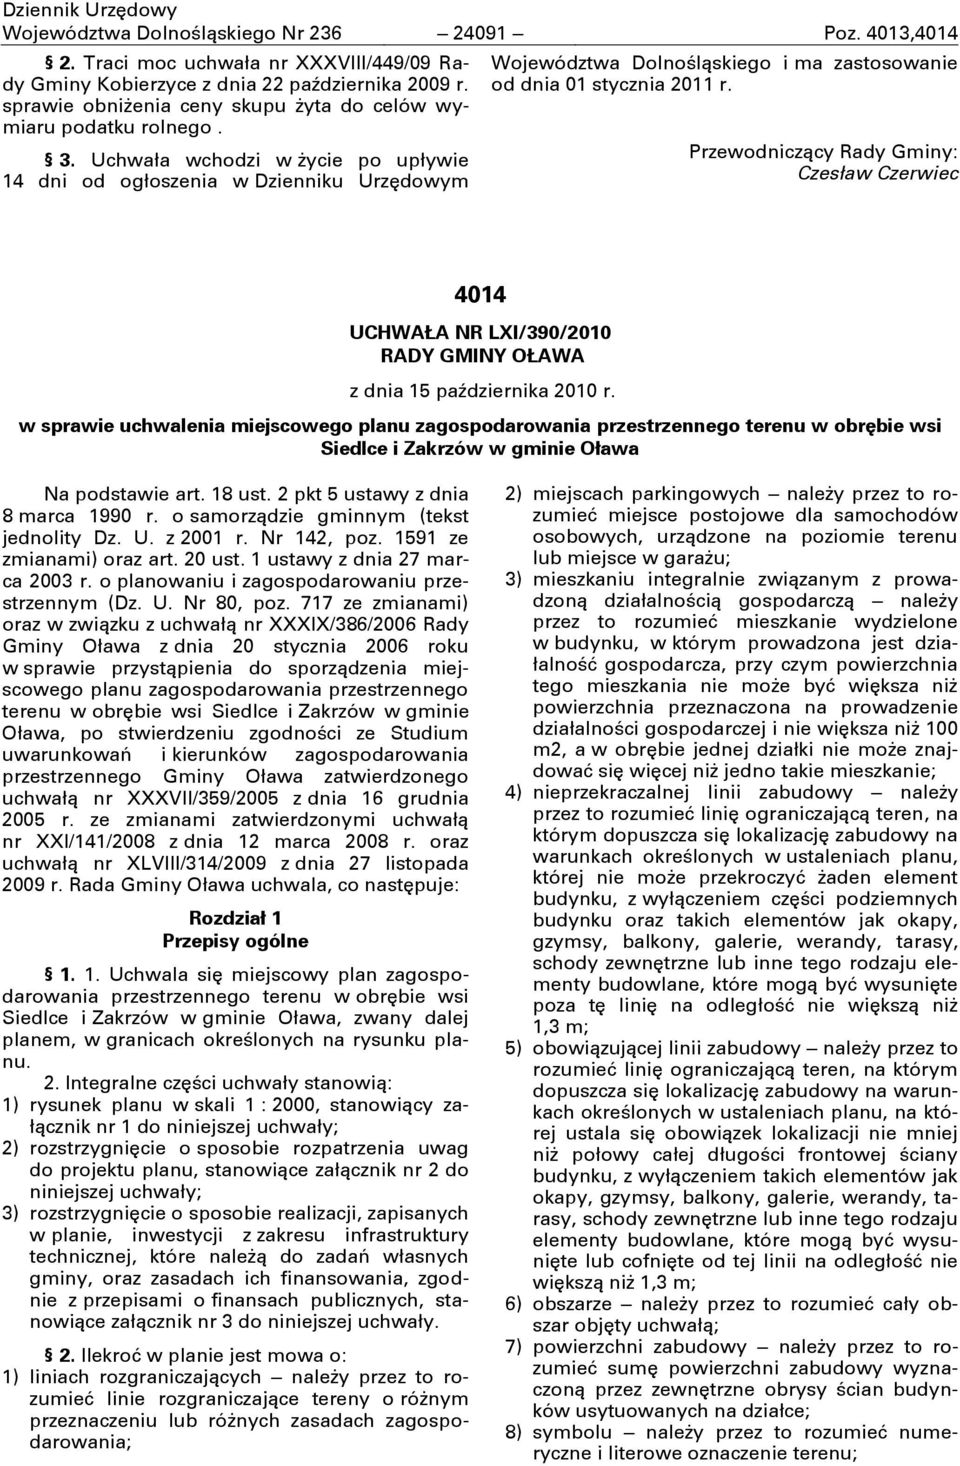 Uchwała wchodzi w życie po upływie 14 dni od ogłoszenia w Dzienniku Urzędowym Województwa Dolnośląskiego i ma zastosowanie od dnia 01 stycznia 2011 r.